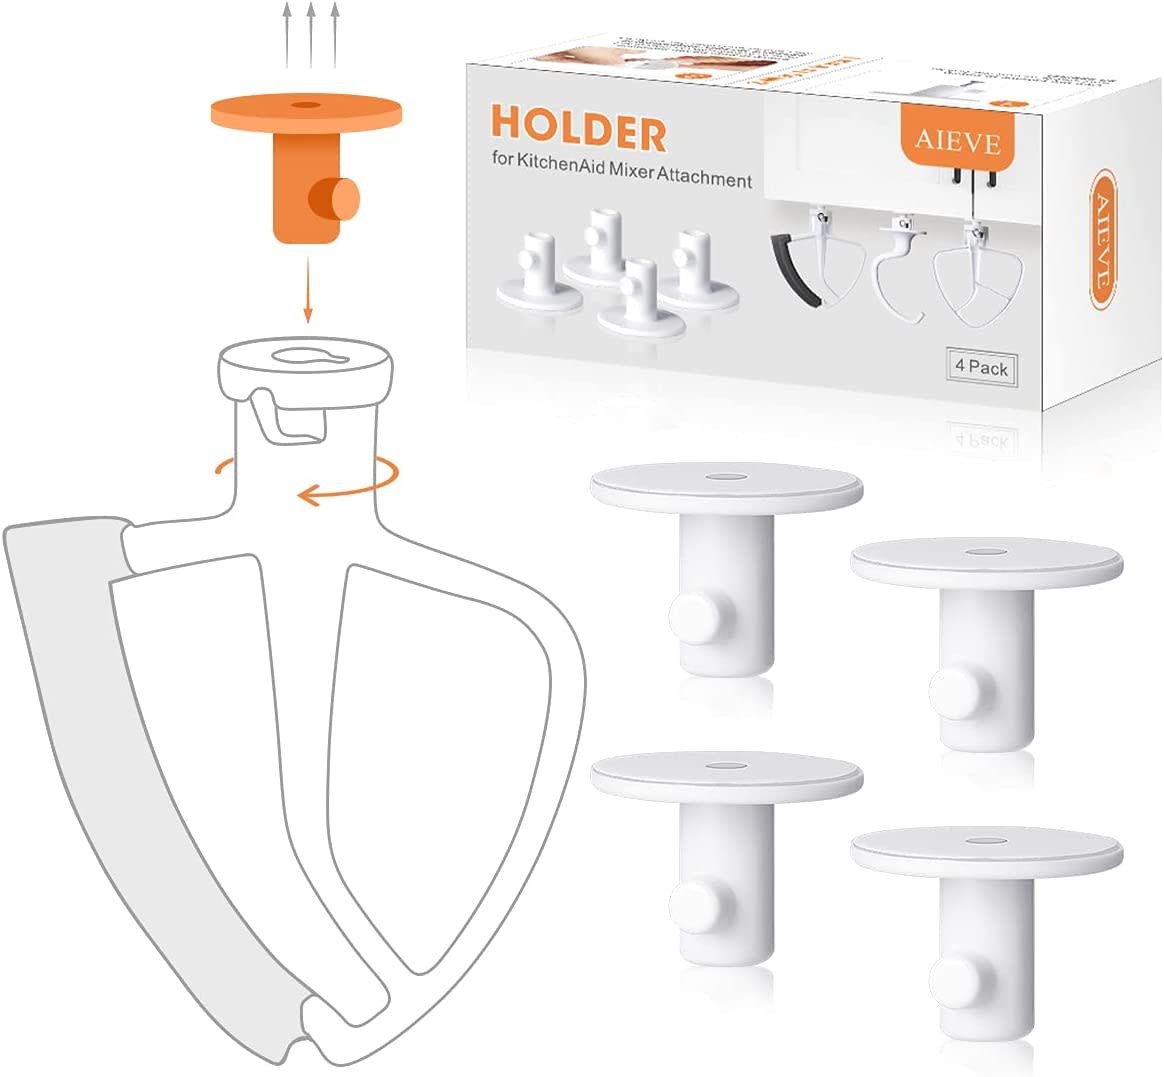 4-Pack KitchenAid Mixer Attachment Holder Organizer Hanger, Free